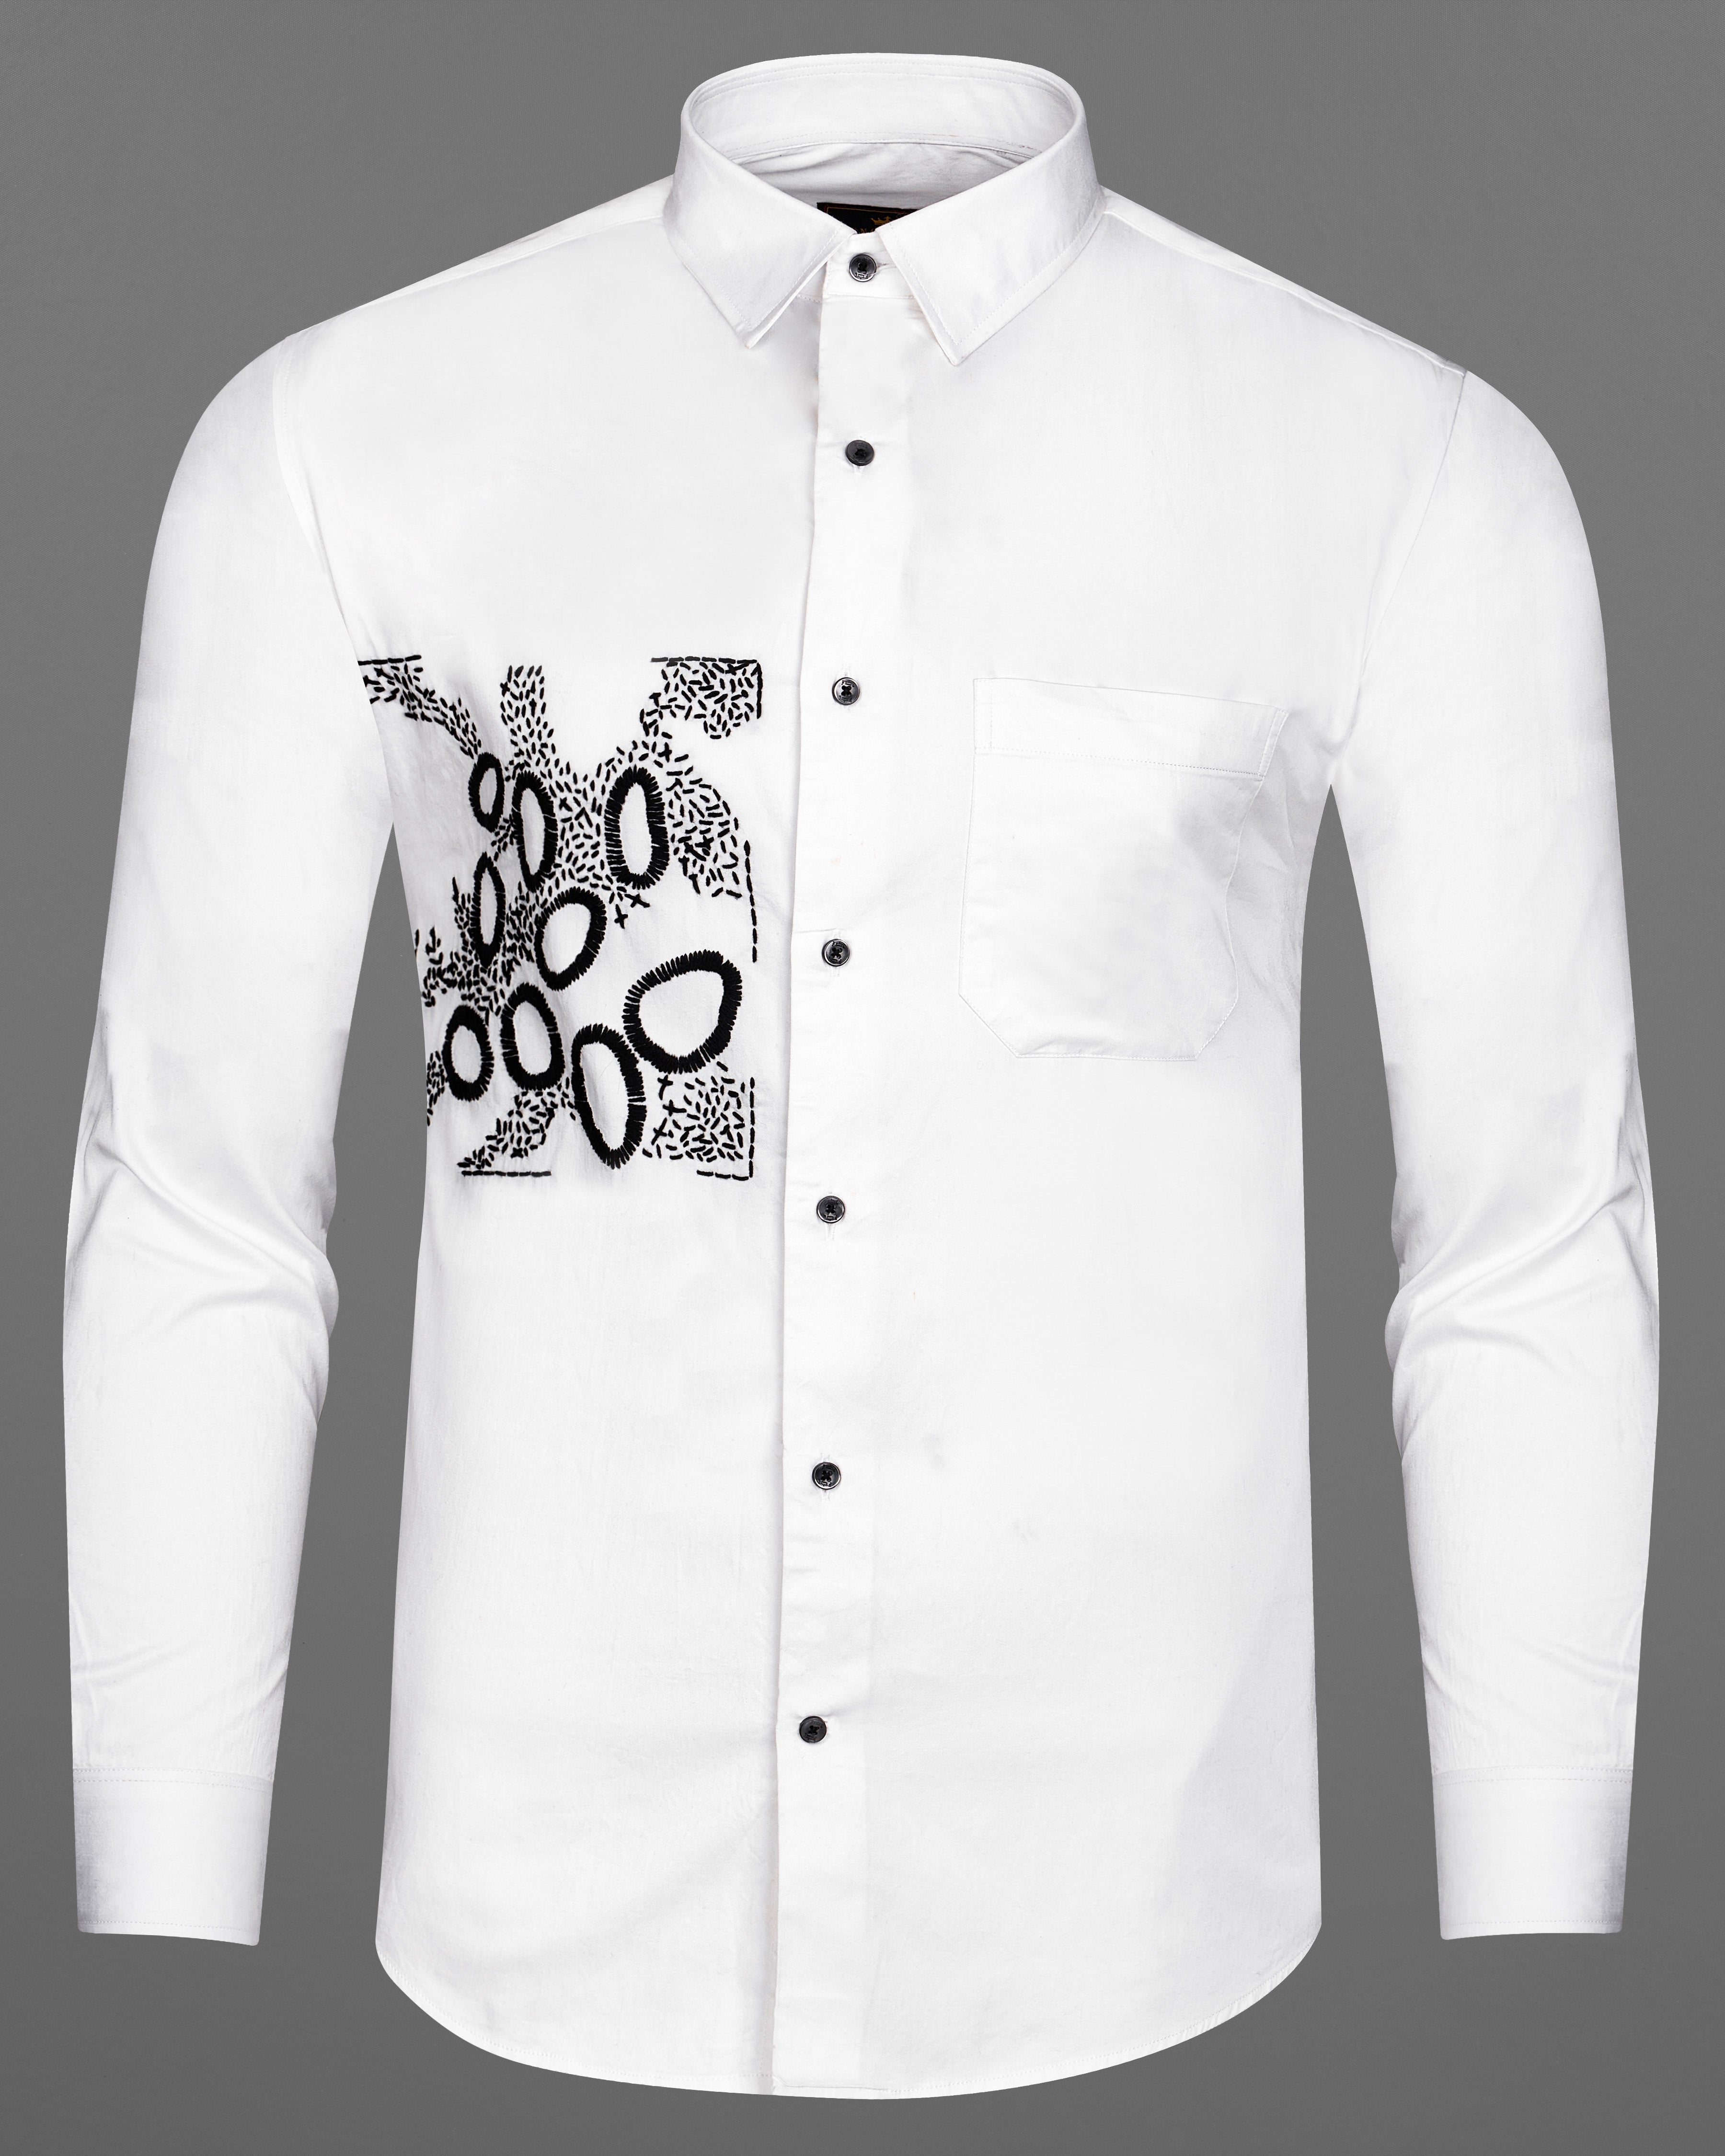 Bright White Subtle Sheen with Black Embroidered Super Soft Premium Cotton Shirt 1062-BLK-E020-38,1062-BLK-E020-H-38,1062-BLK-E020-39,1062-BLK-E020-H-39,1062-BLK-E020-40,1062-BLK-E020-H-40,1062-BLK-E020-42,1062-BLK-E020-H-42,1062-BLK-E020-44,1062-BLK-E020-H-44,1062-BLK-E020-46,1062-BLK-E020-H-46,1062-BLK-E020-48,1062-BLK-E020-H-48,1062-BLK-E020-50,1062-BLK-E020-H-50,1062-BLK-E020-52,1062-BLK-E020-H-52